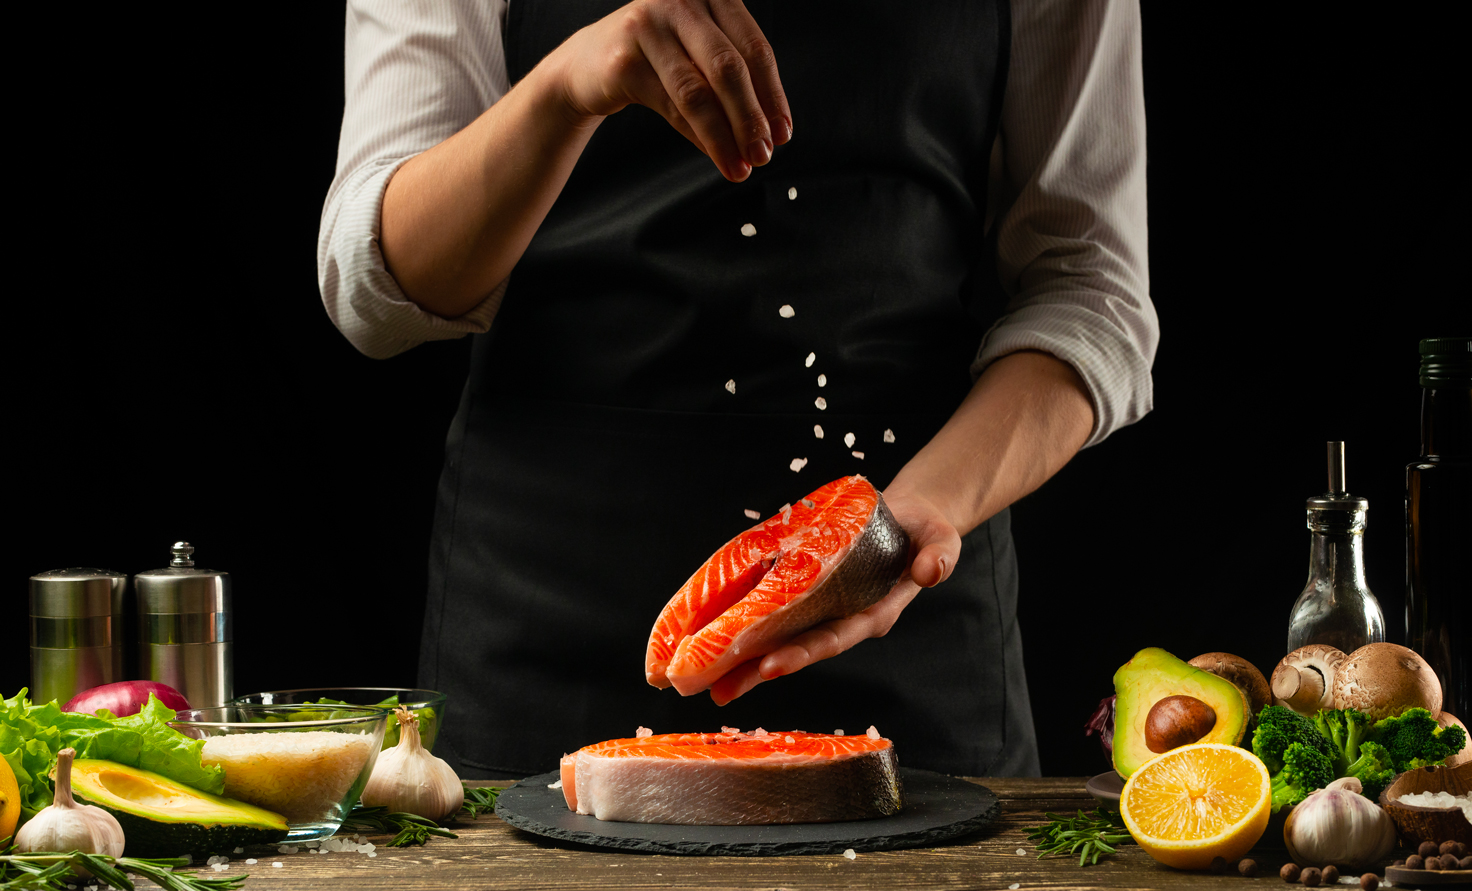 La photo met en scène un cuisinier préparant du saumon. Il s'agit de la photo principale de cet article rédigé par Eventdrive.